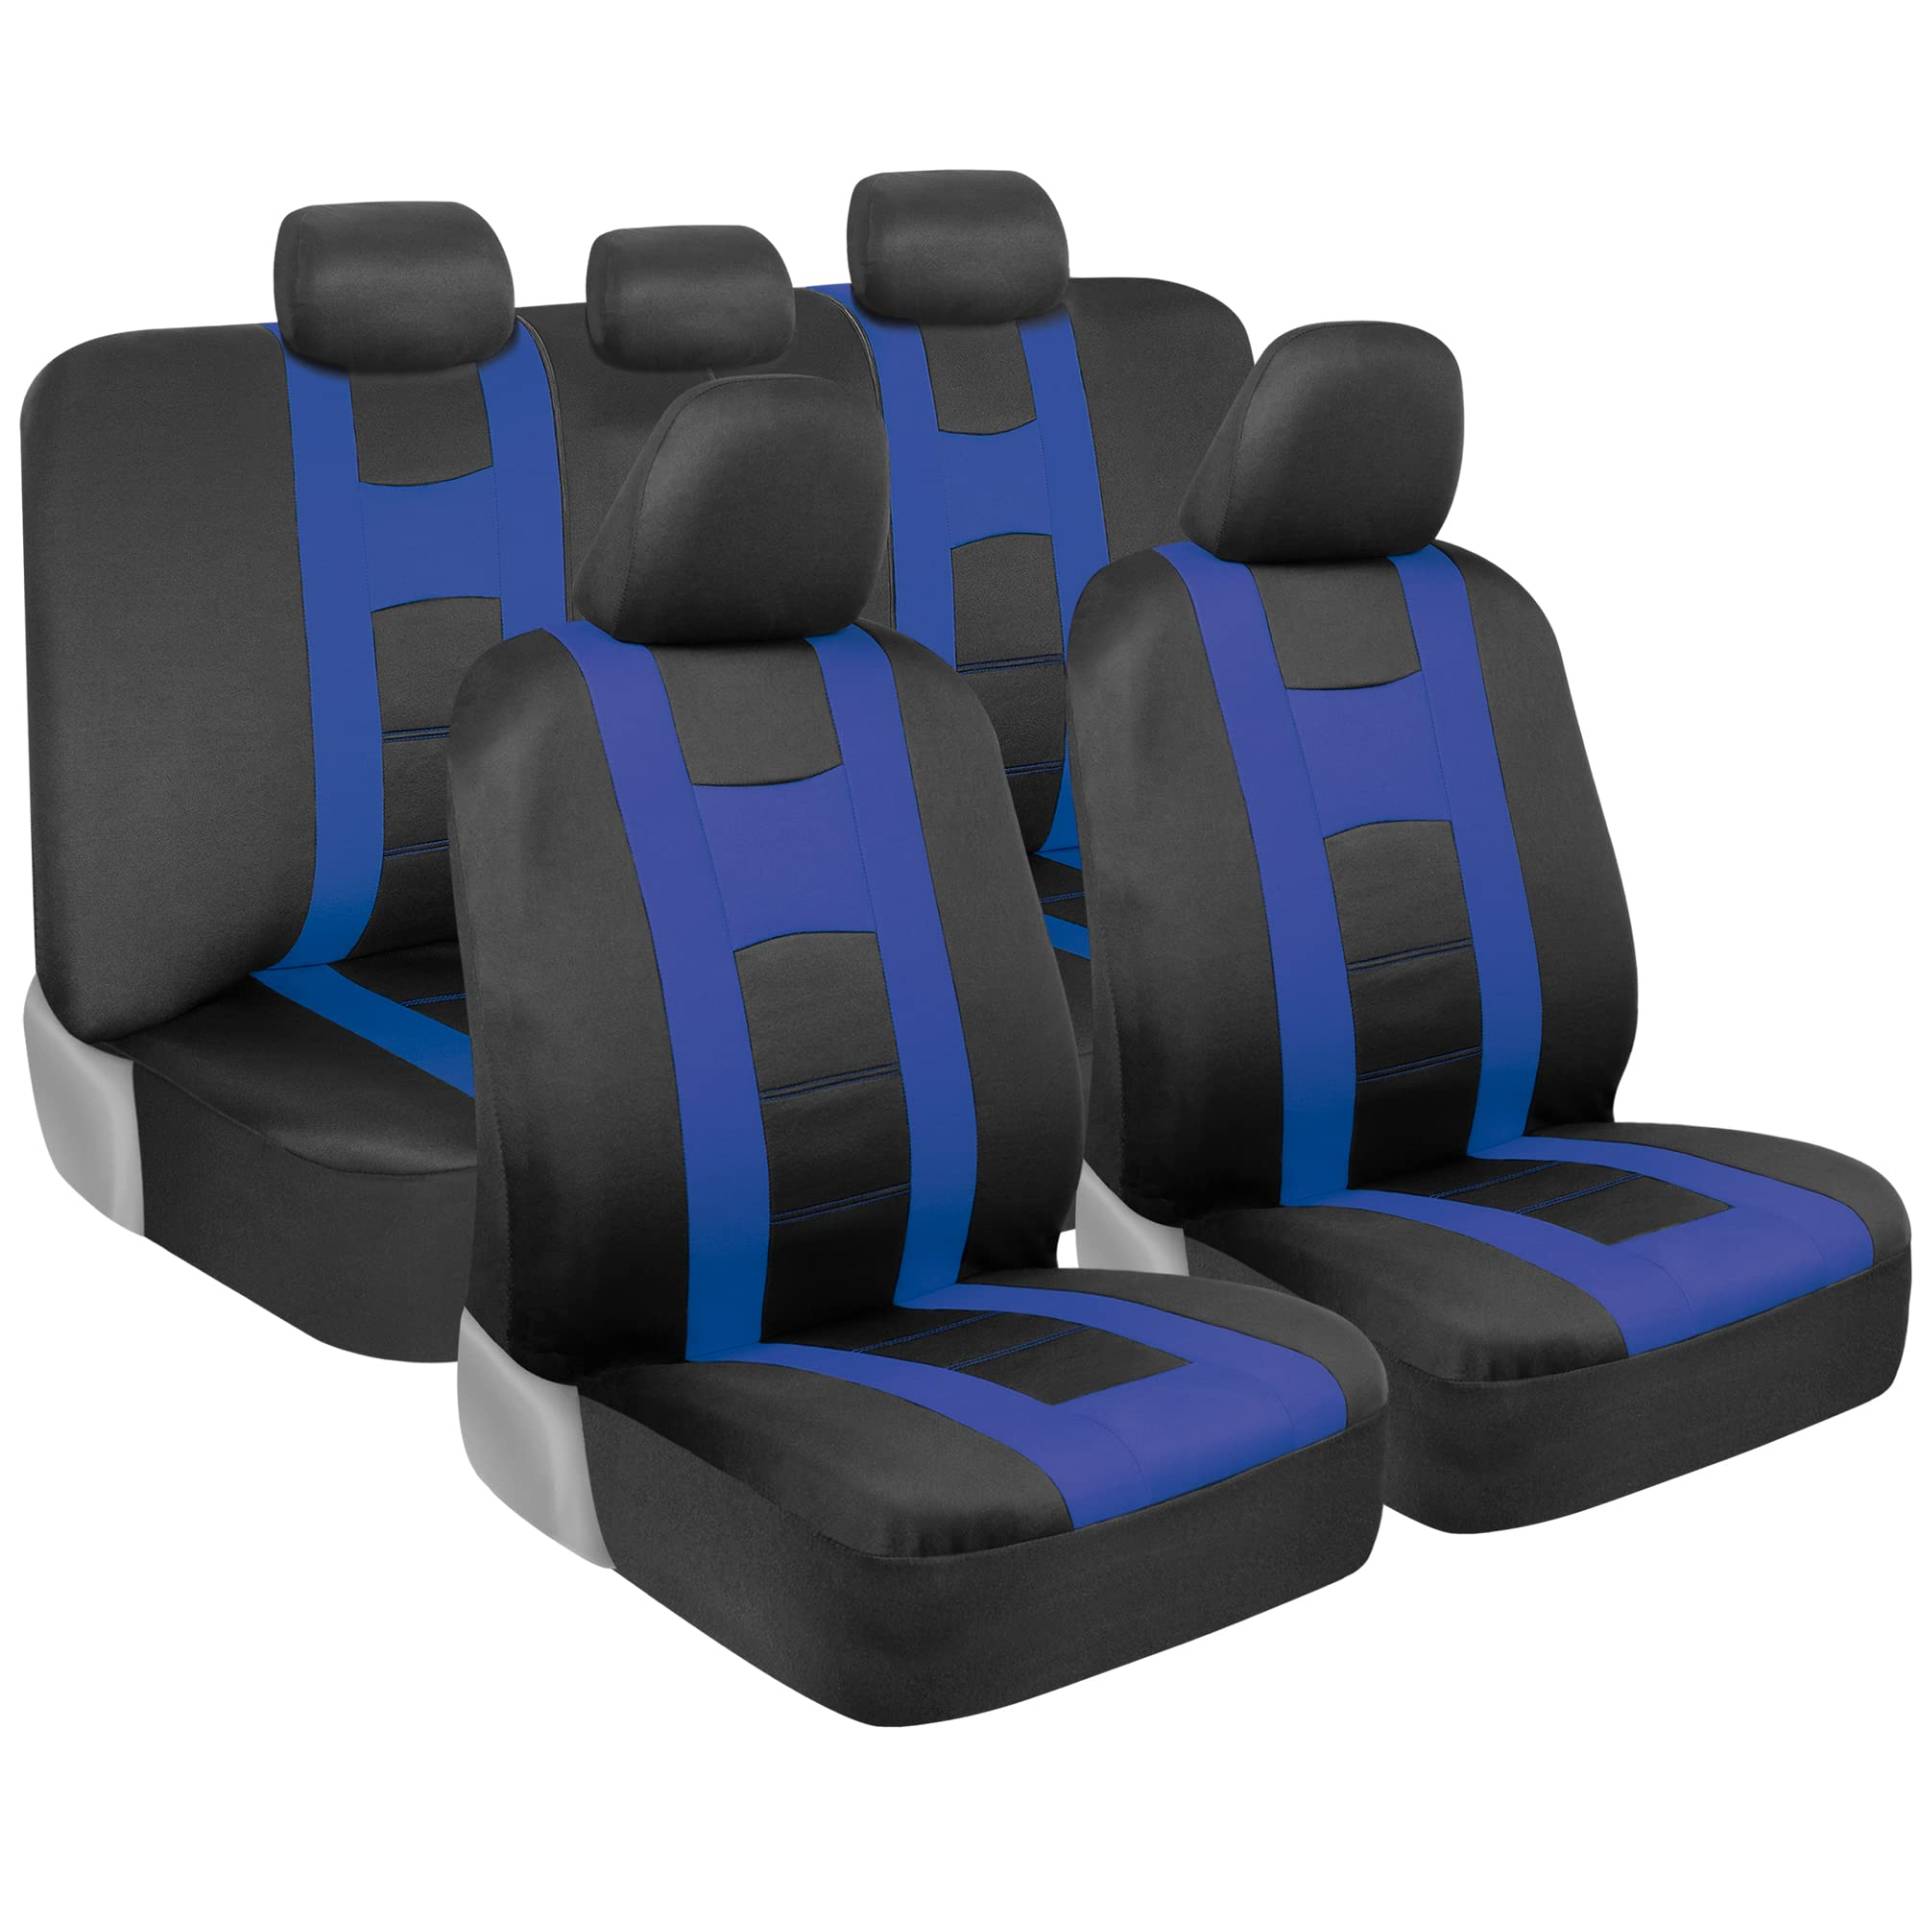 BDK carXS Sitzbezüge für Autos, blau, zweifarbig, mit passendem Rücksitzbezug, passend für die meisten Pkw, LKW, Van, SUV, Innenausstattung, komplettes Set von BDK